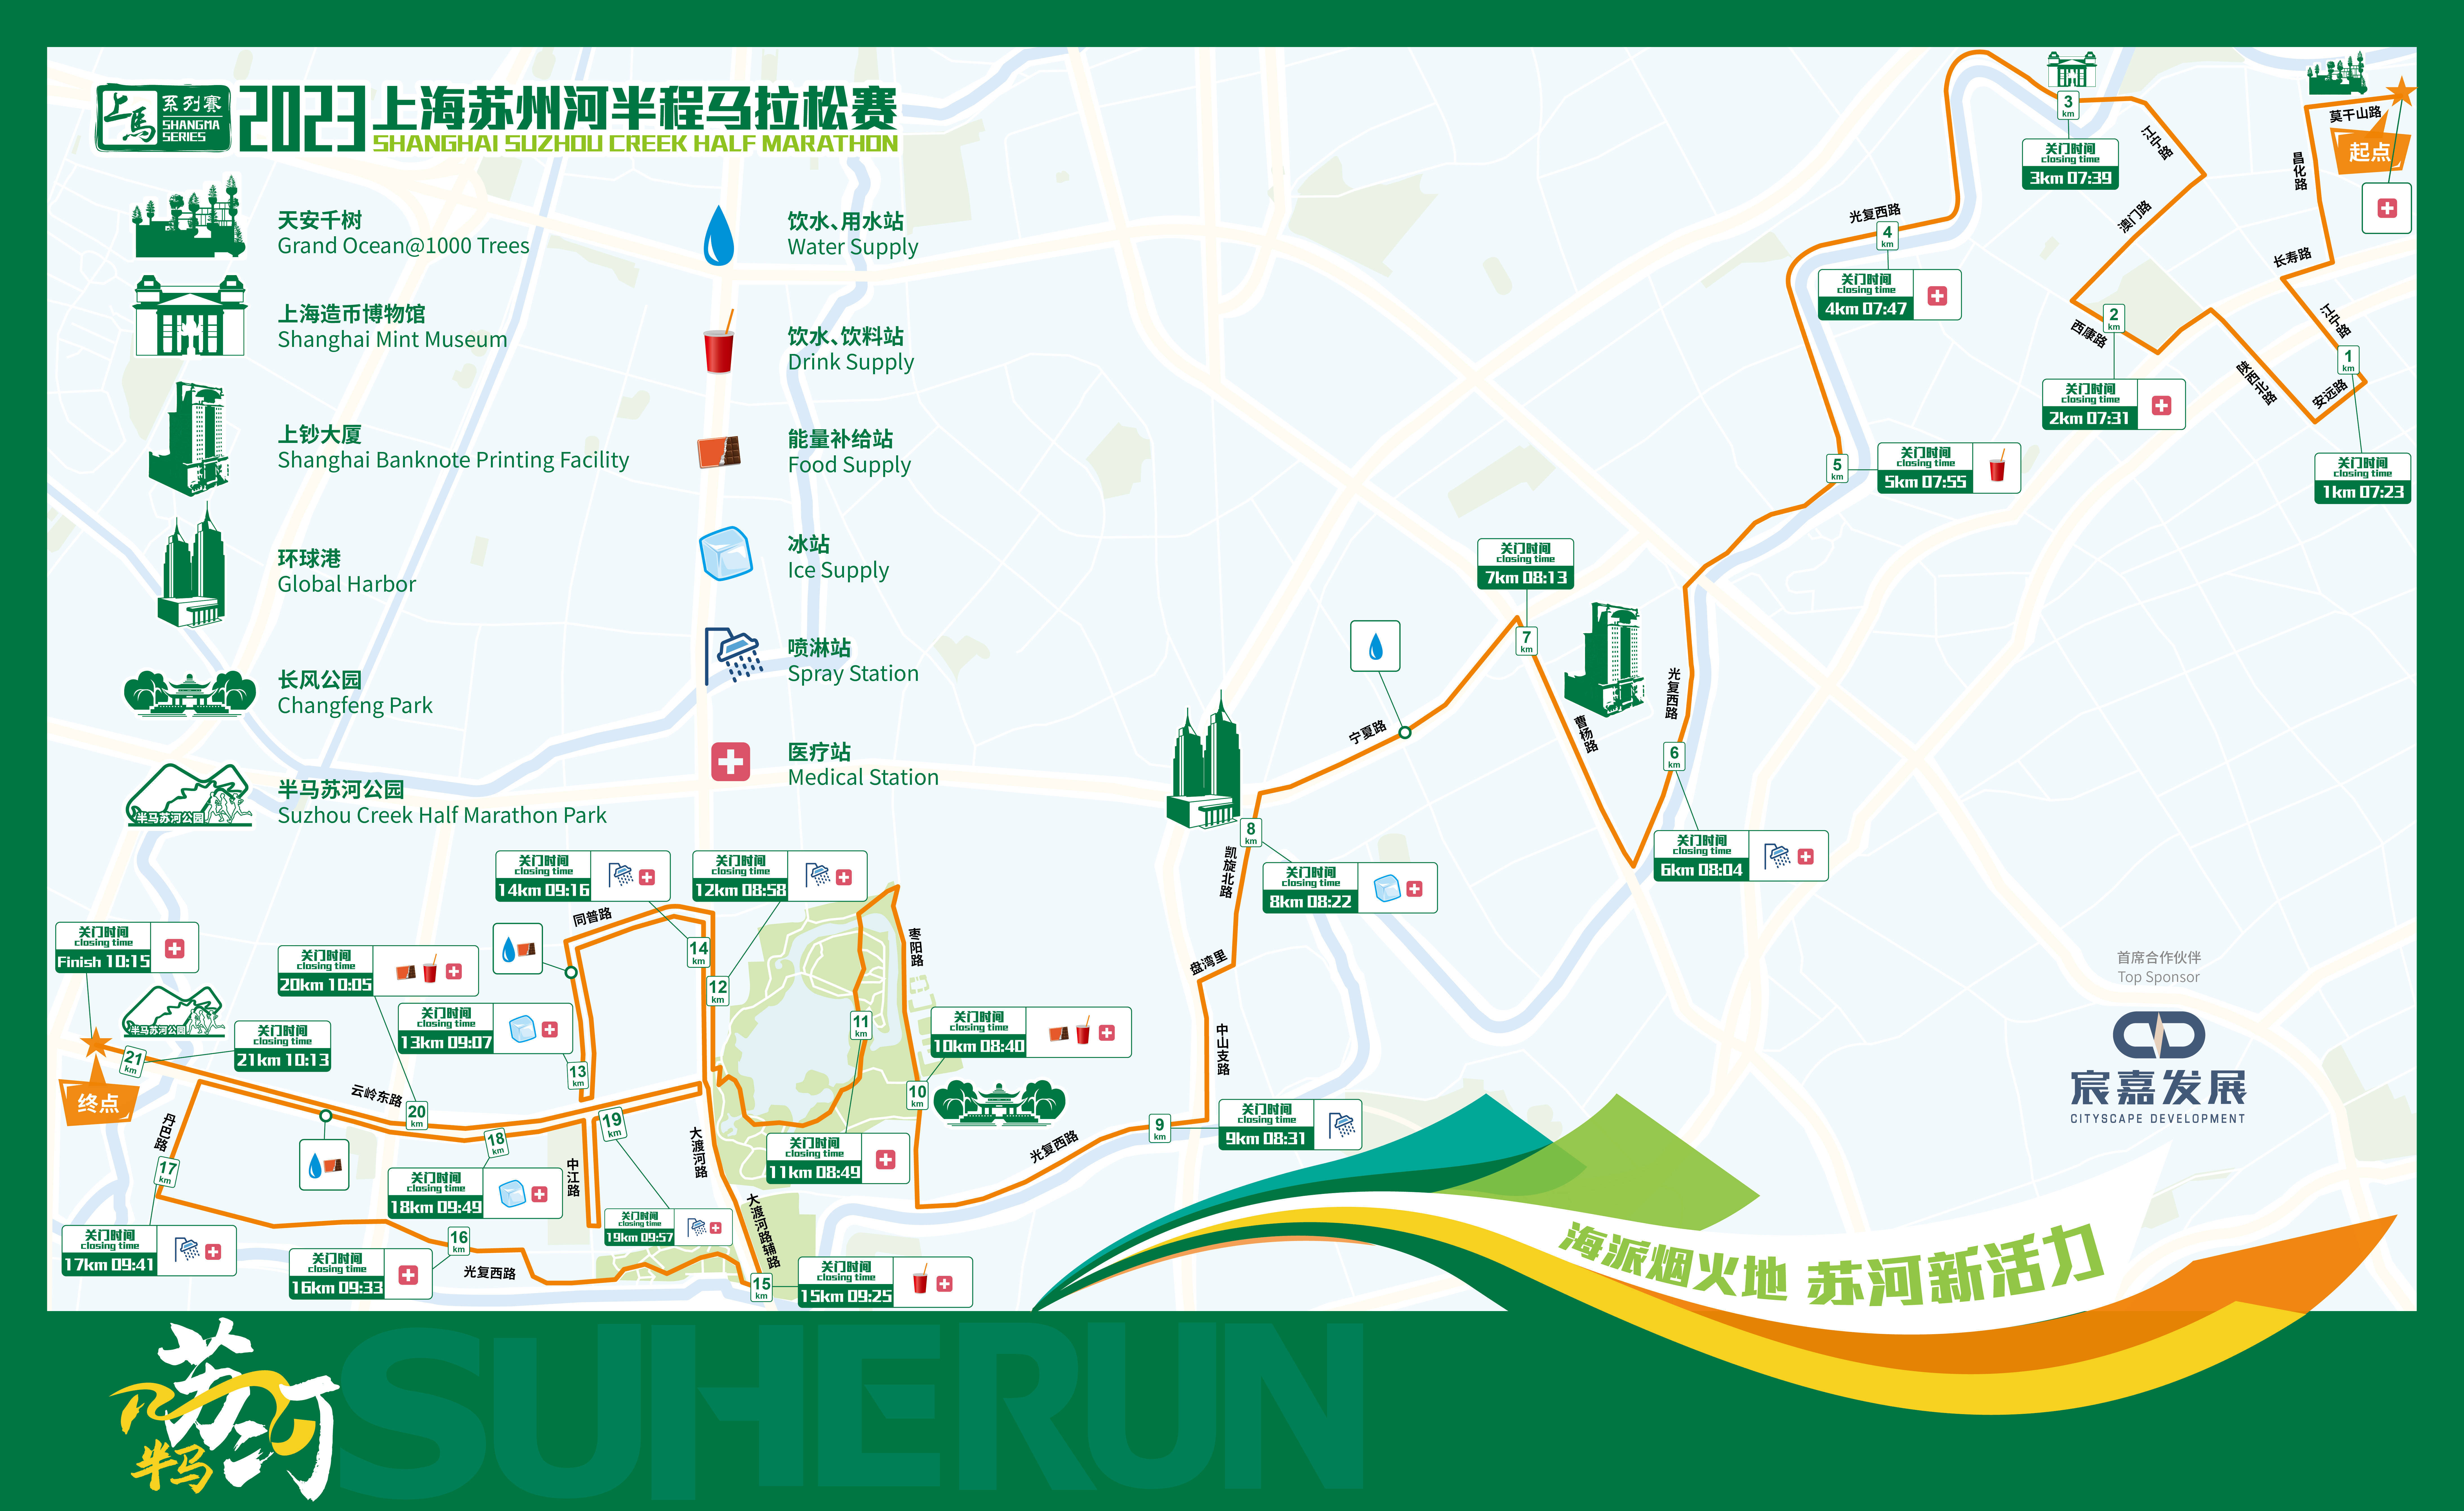 上海苏州河半程马拉松赛周六开跑,这些路段将临时交通管控